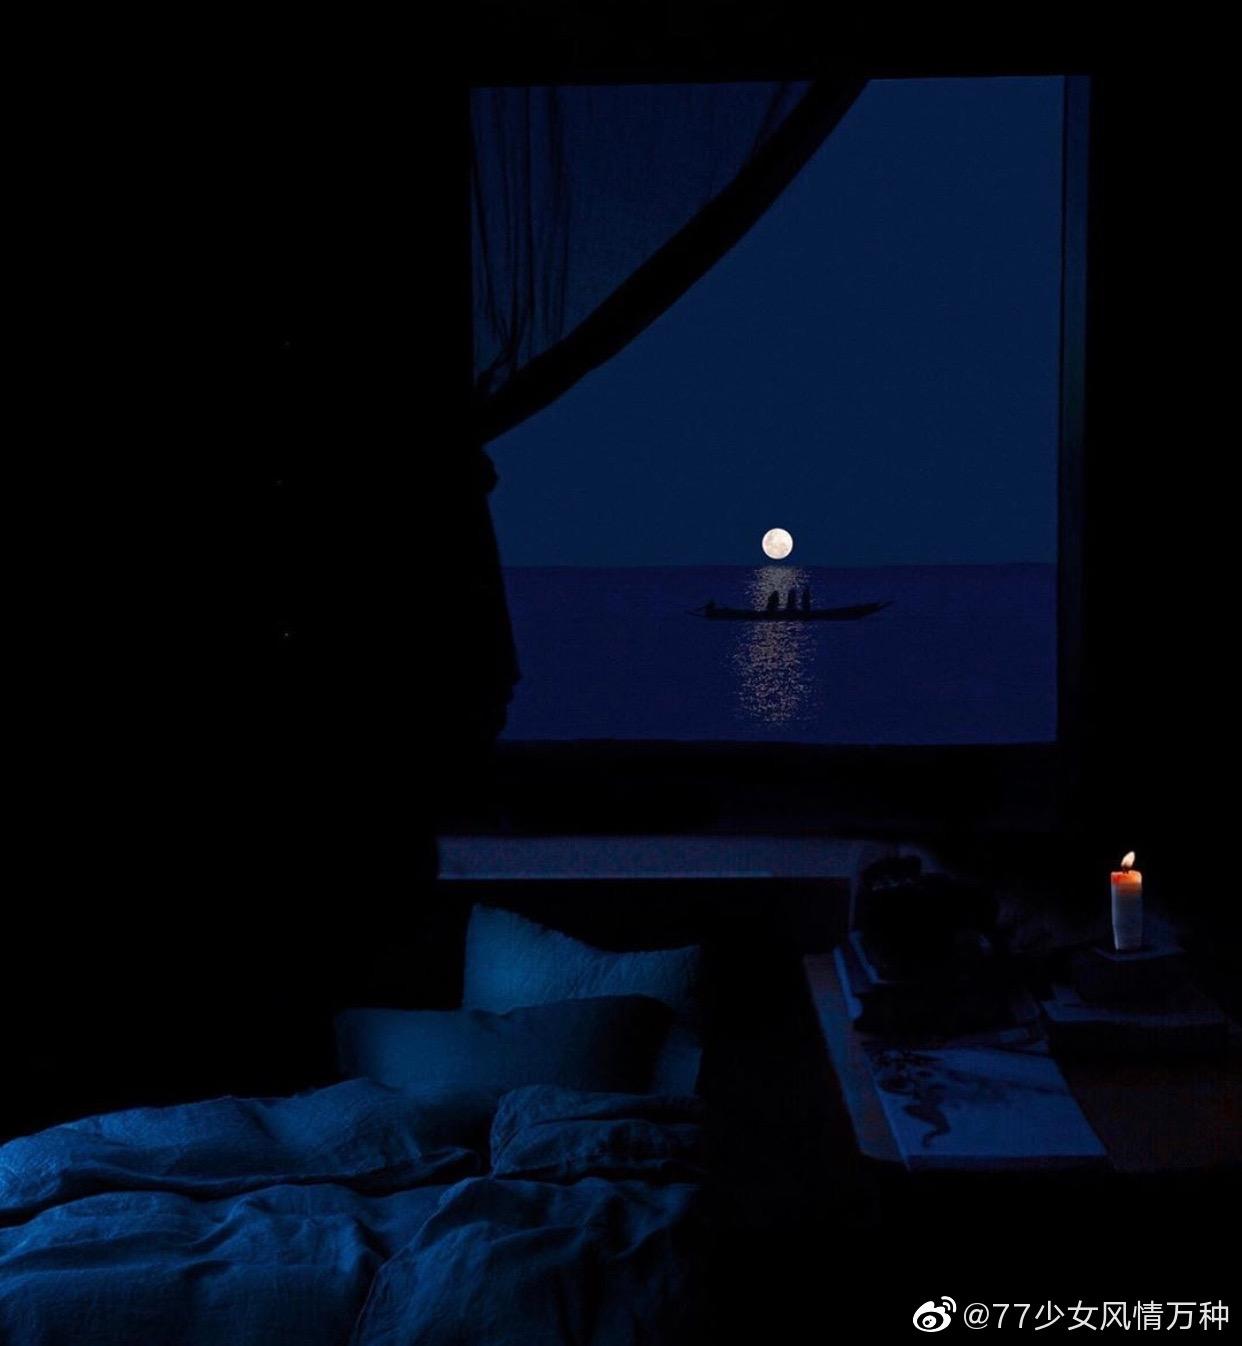 一个站在大海前对着月亮许愿的女孩_站酷海洛_正版图片_视频_字体_音乐素材交易平台_站酷旗下品牌